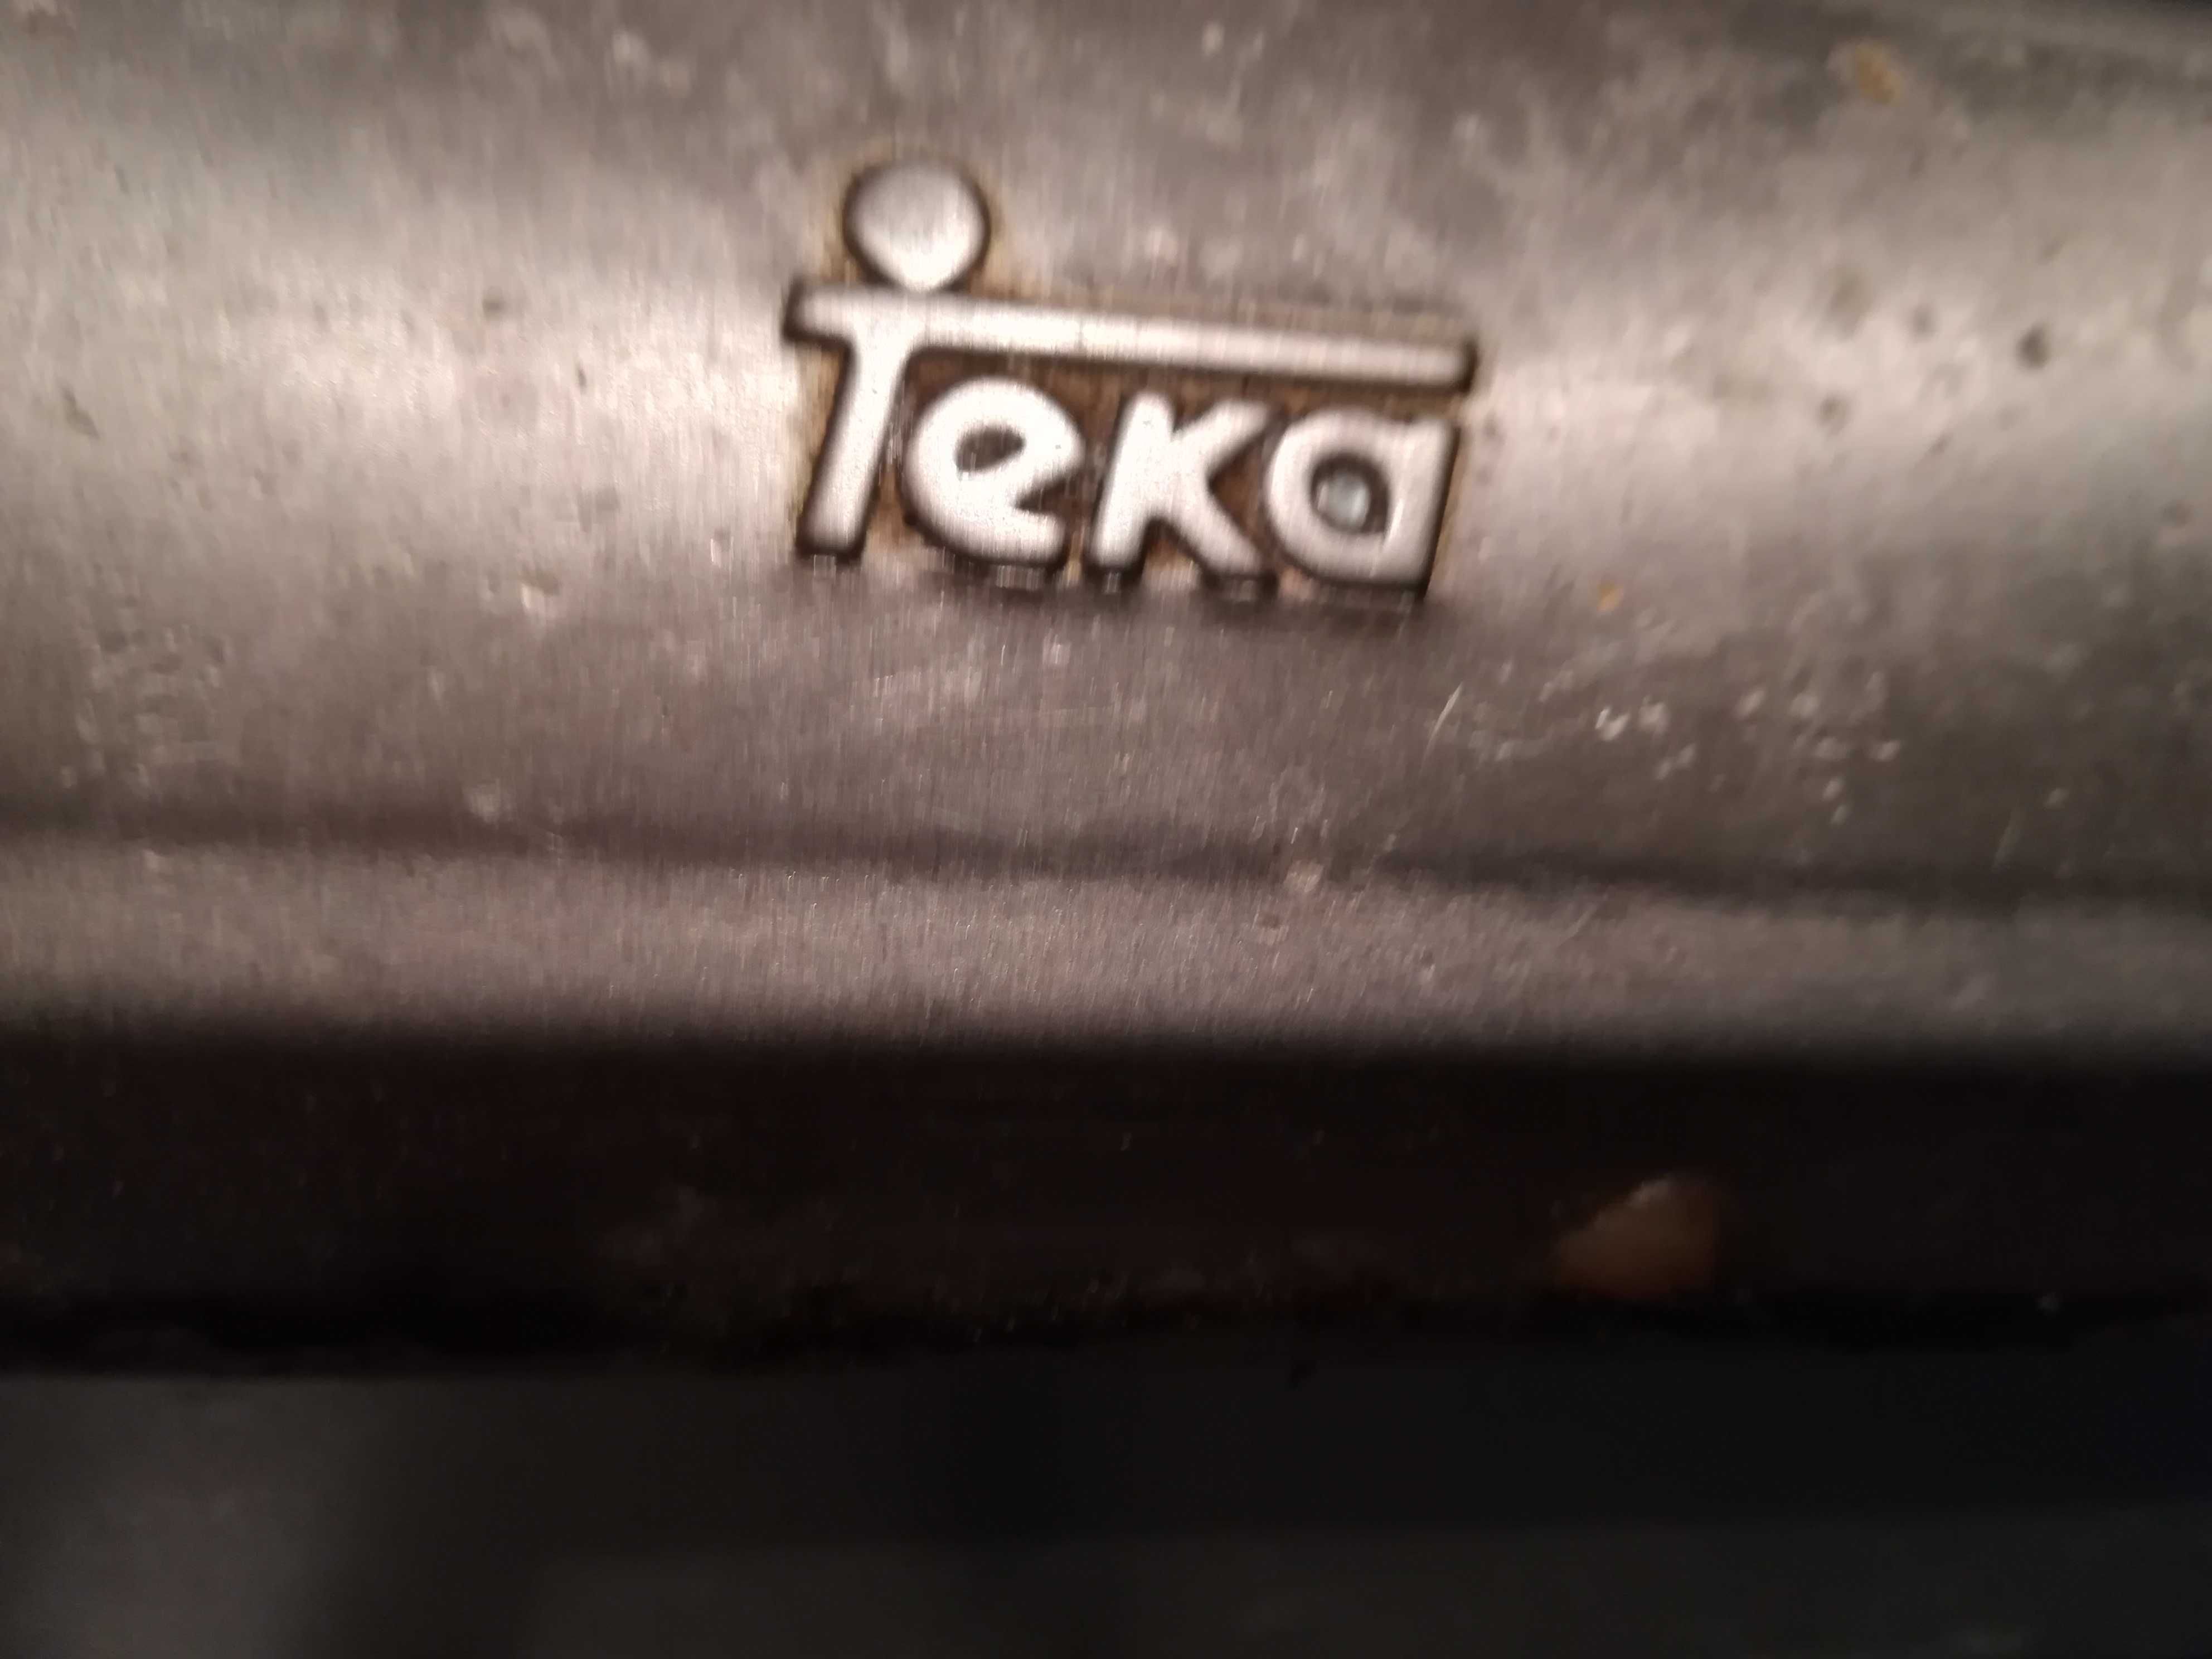 Placa de fogão Teka usada mas a funcionar perfeitamente (gas natural)